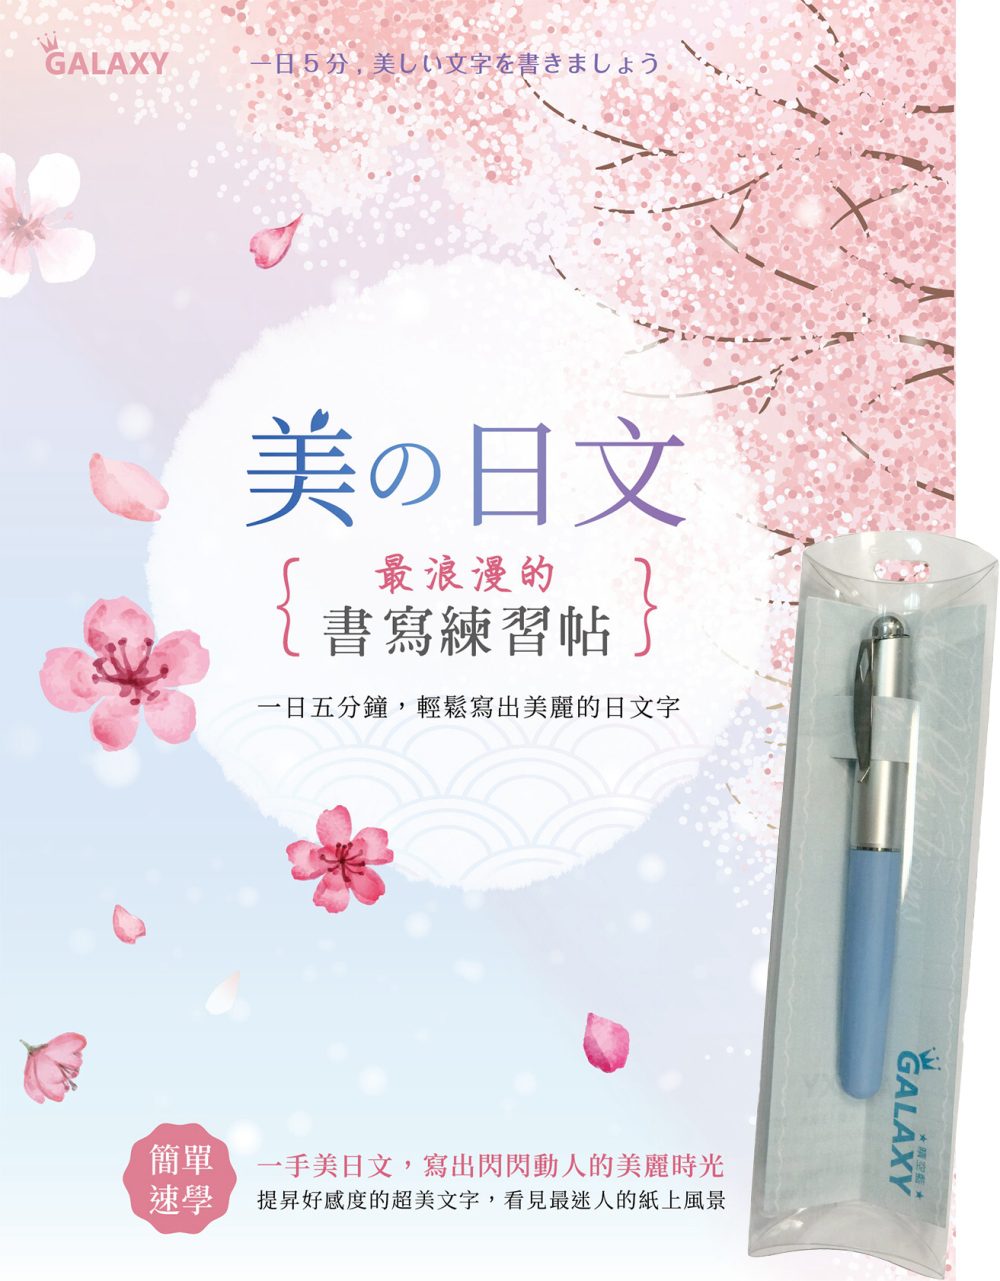 【Galaxy:晴空藍鋼筆】X《美?日文•浪漫的書寫練習帖》